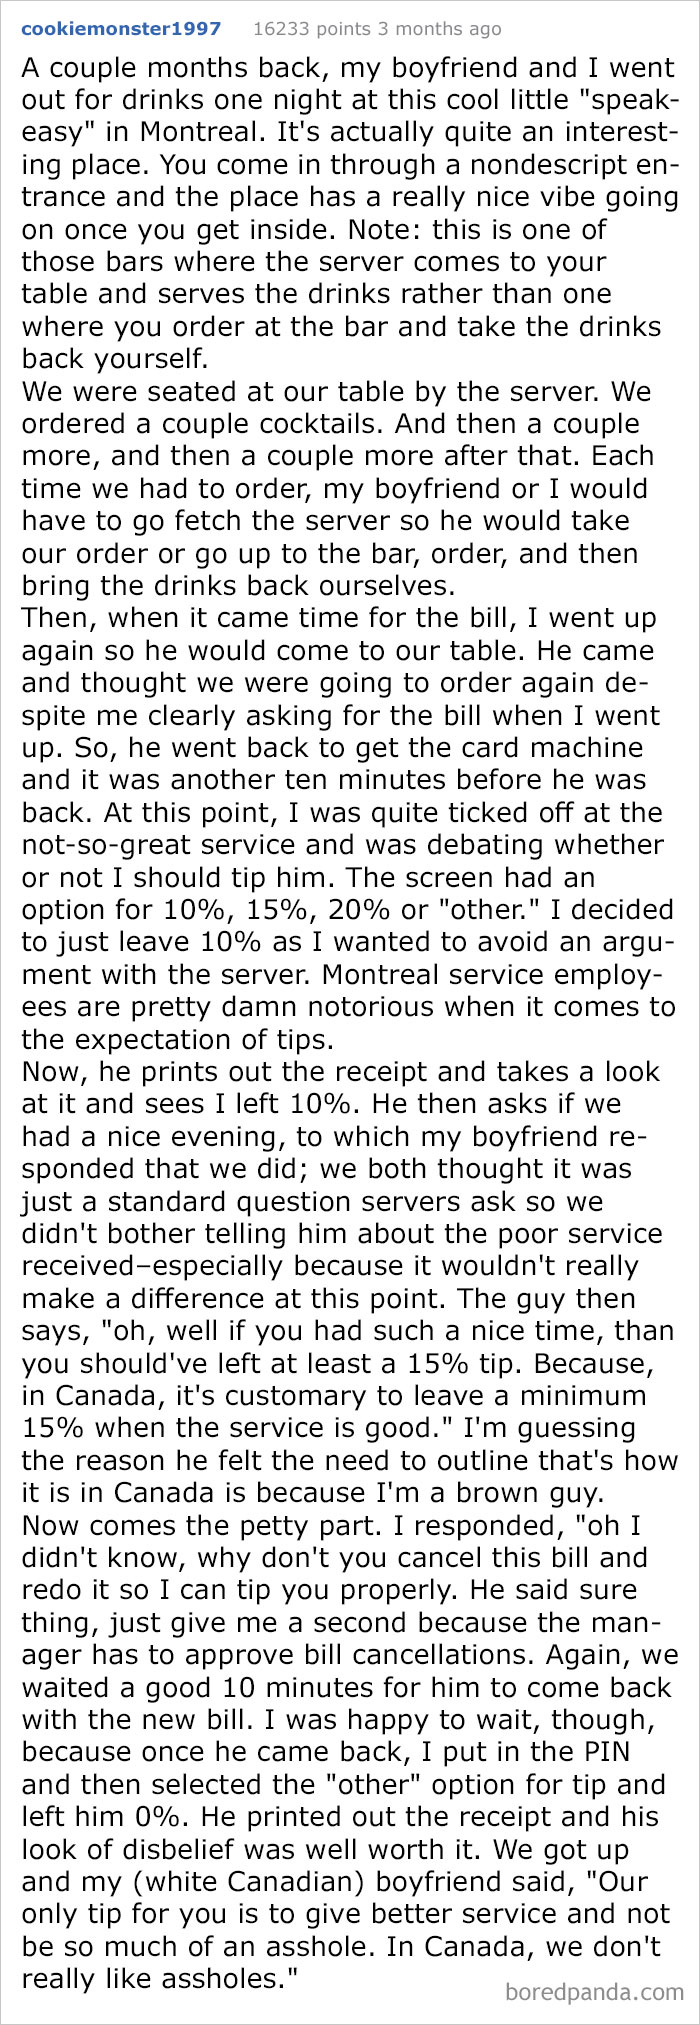 Shitty Server Demands A Better Tip